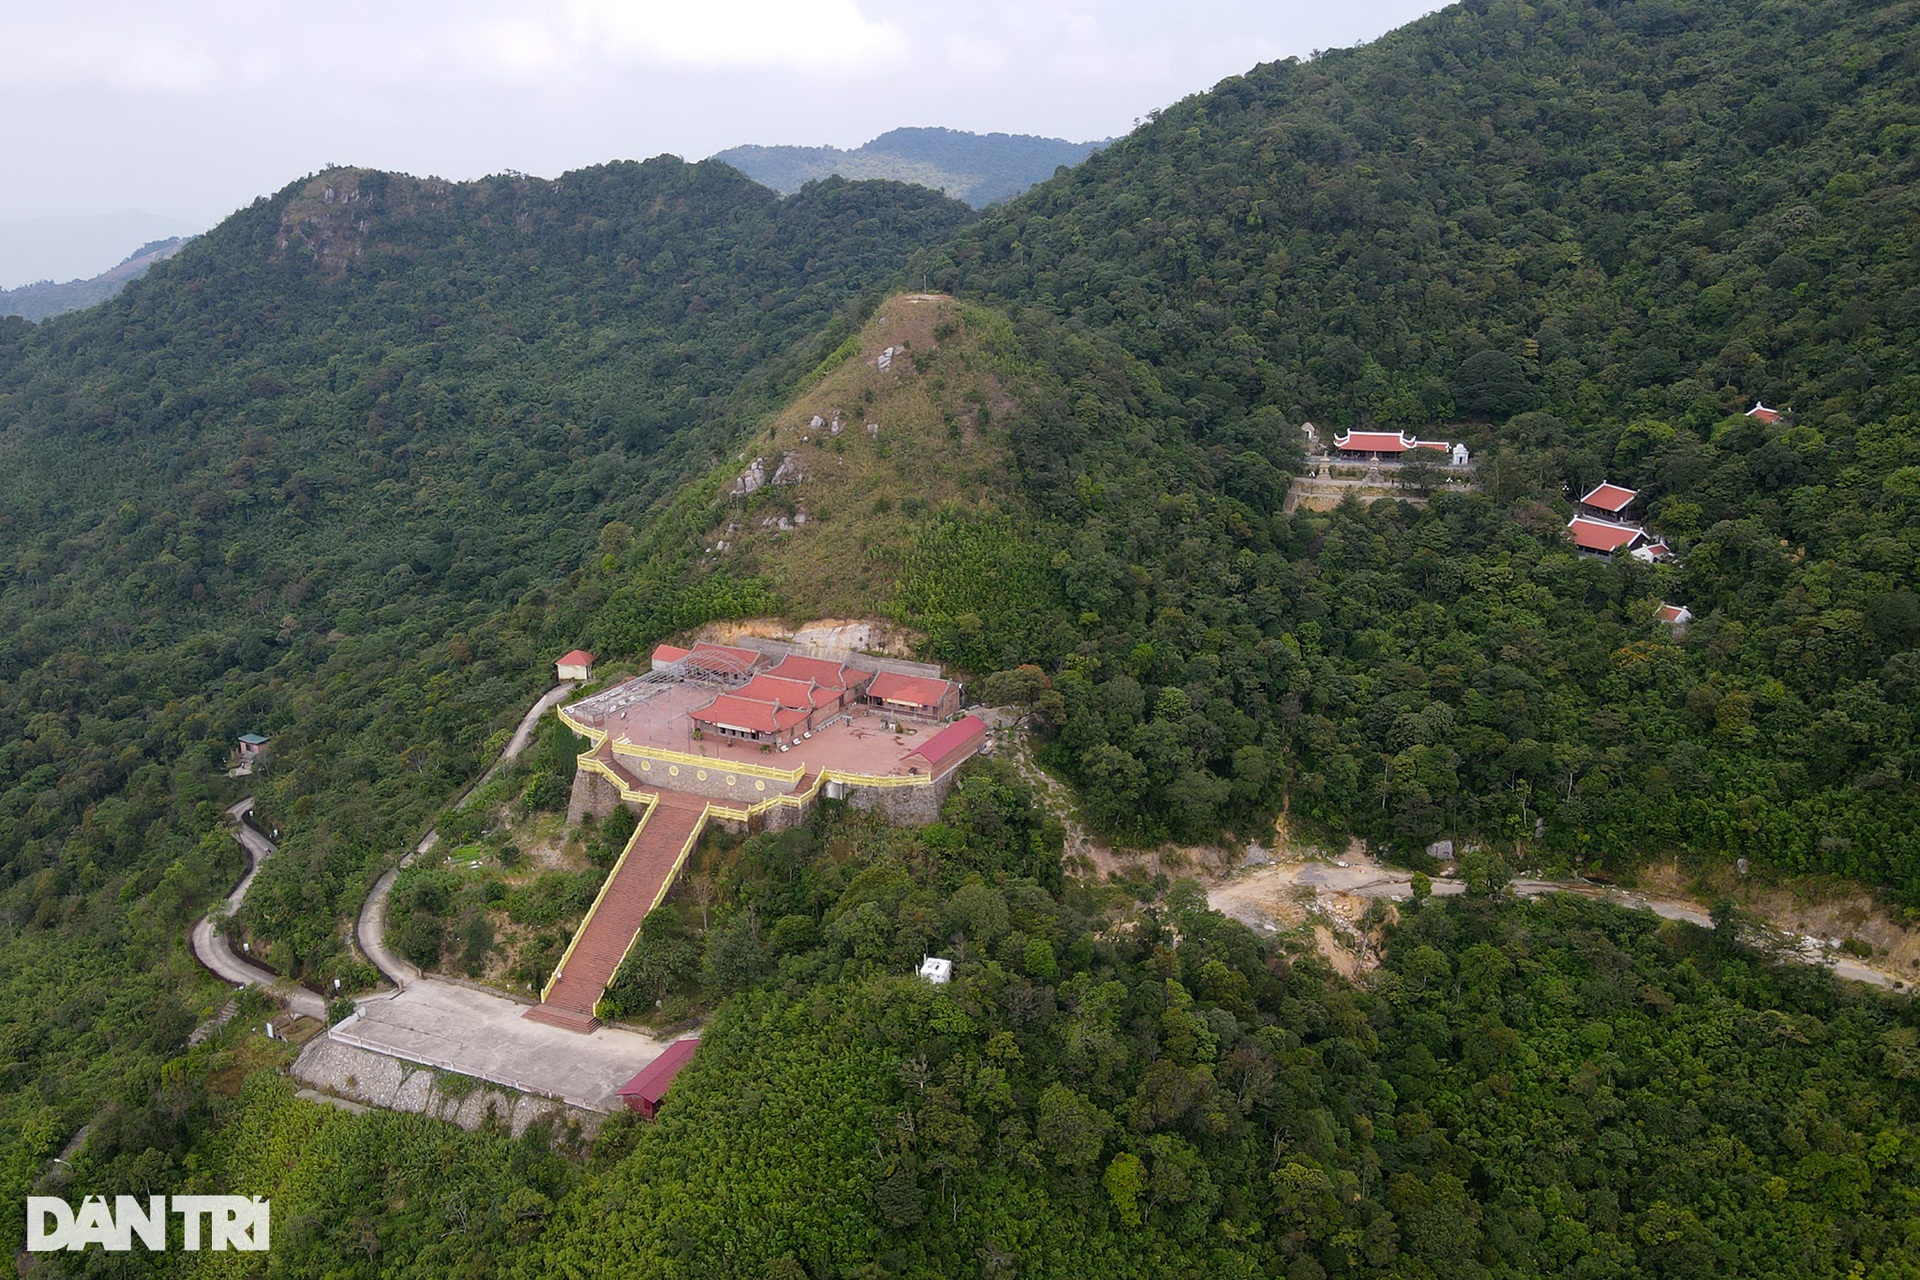 Chiêm ngưỡng ngôi chùa cổ cheo leo trên đỉnh núi ở Quảng Ninh | Báo Dân trí